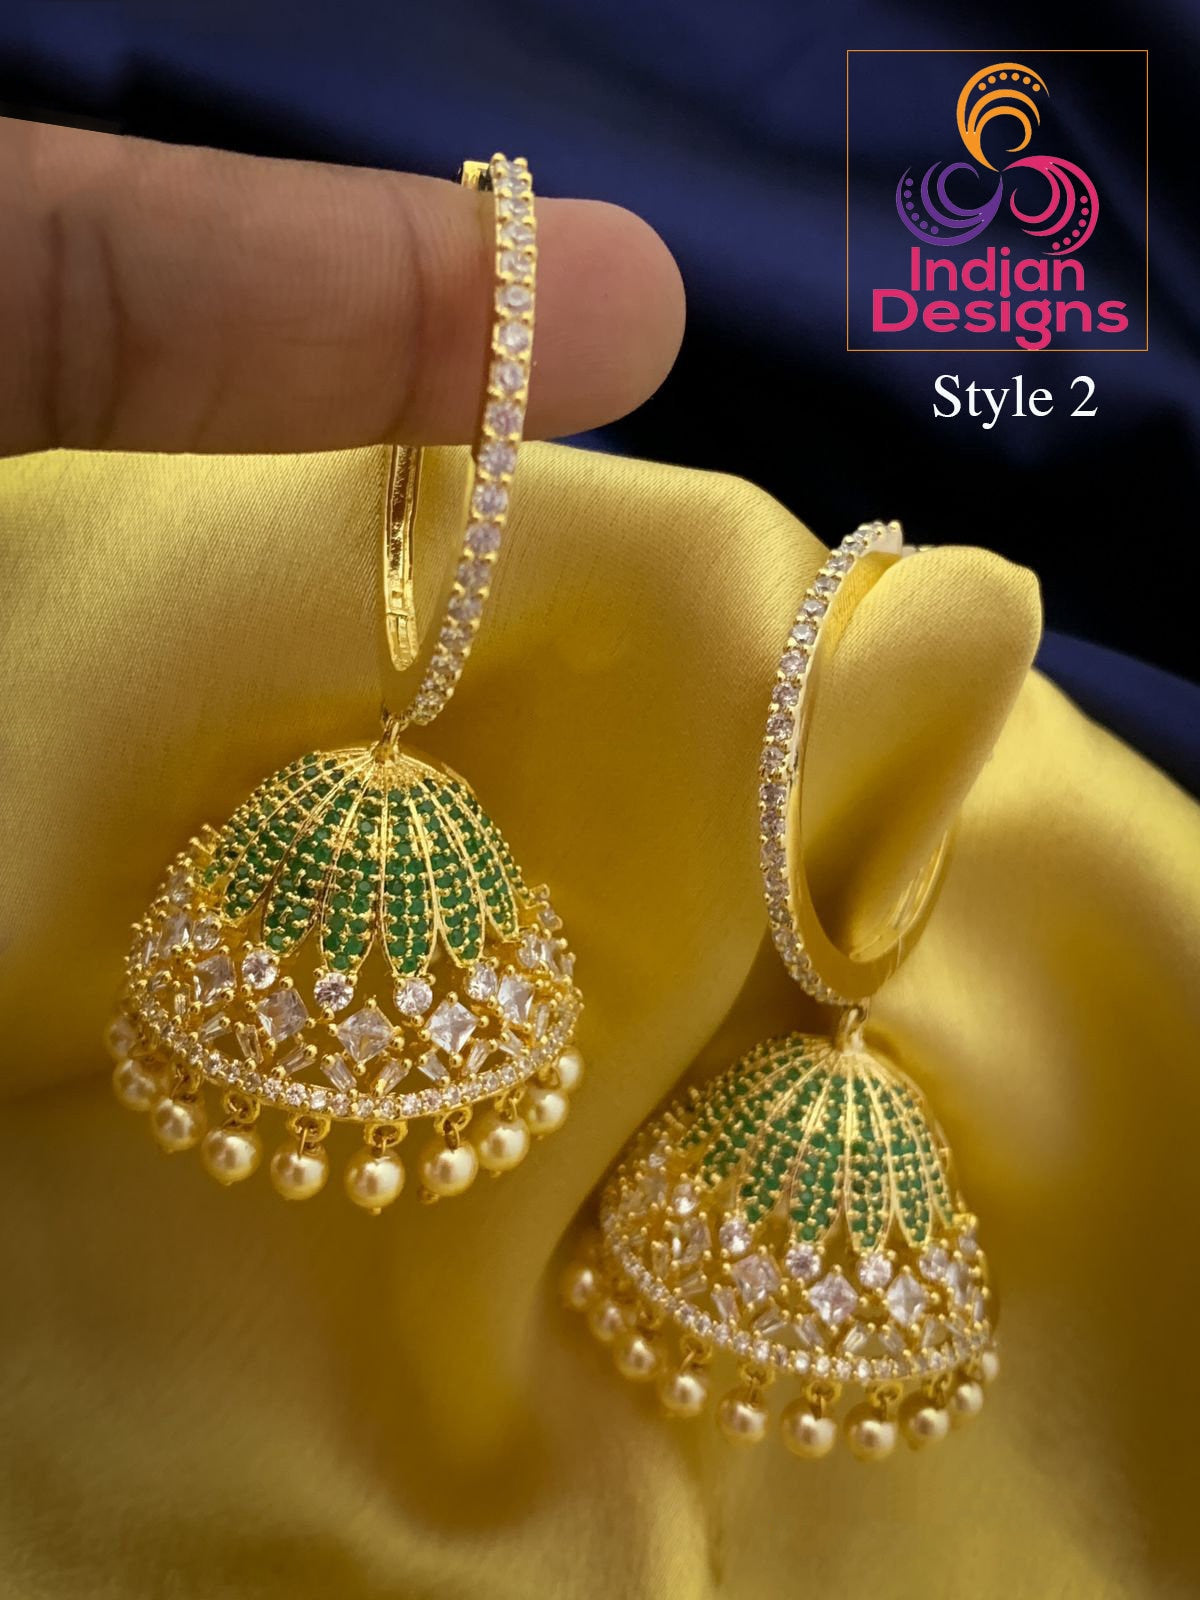 Big Hoop diamond Jhumkas Earrings | Gold hoop earrings with Jhumka | American Diamond Jhumka Jhumki Earrings with Pearl drops